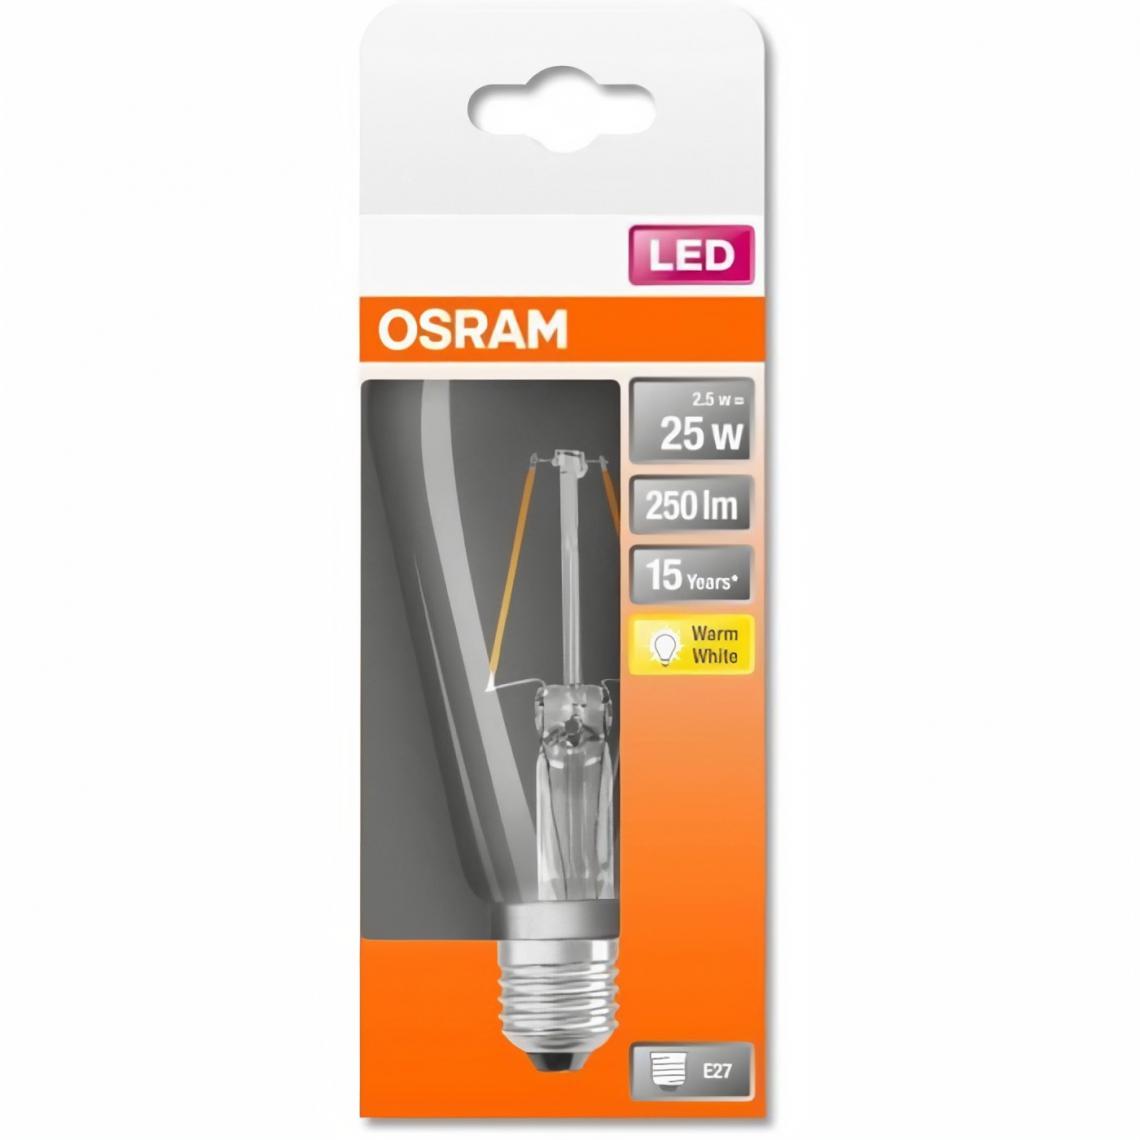 Osram - OSRAM Ampoule LED Edison clair filament 2,5W=25 E27 chaud - Ampoules LED